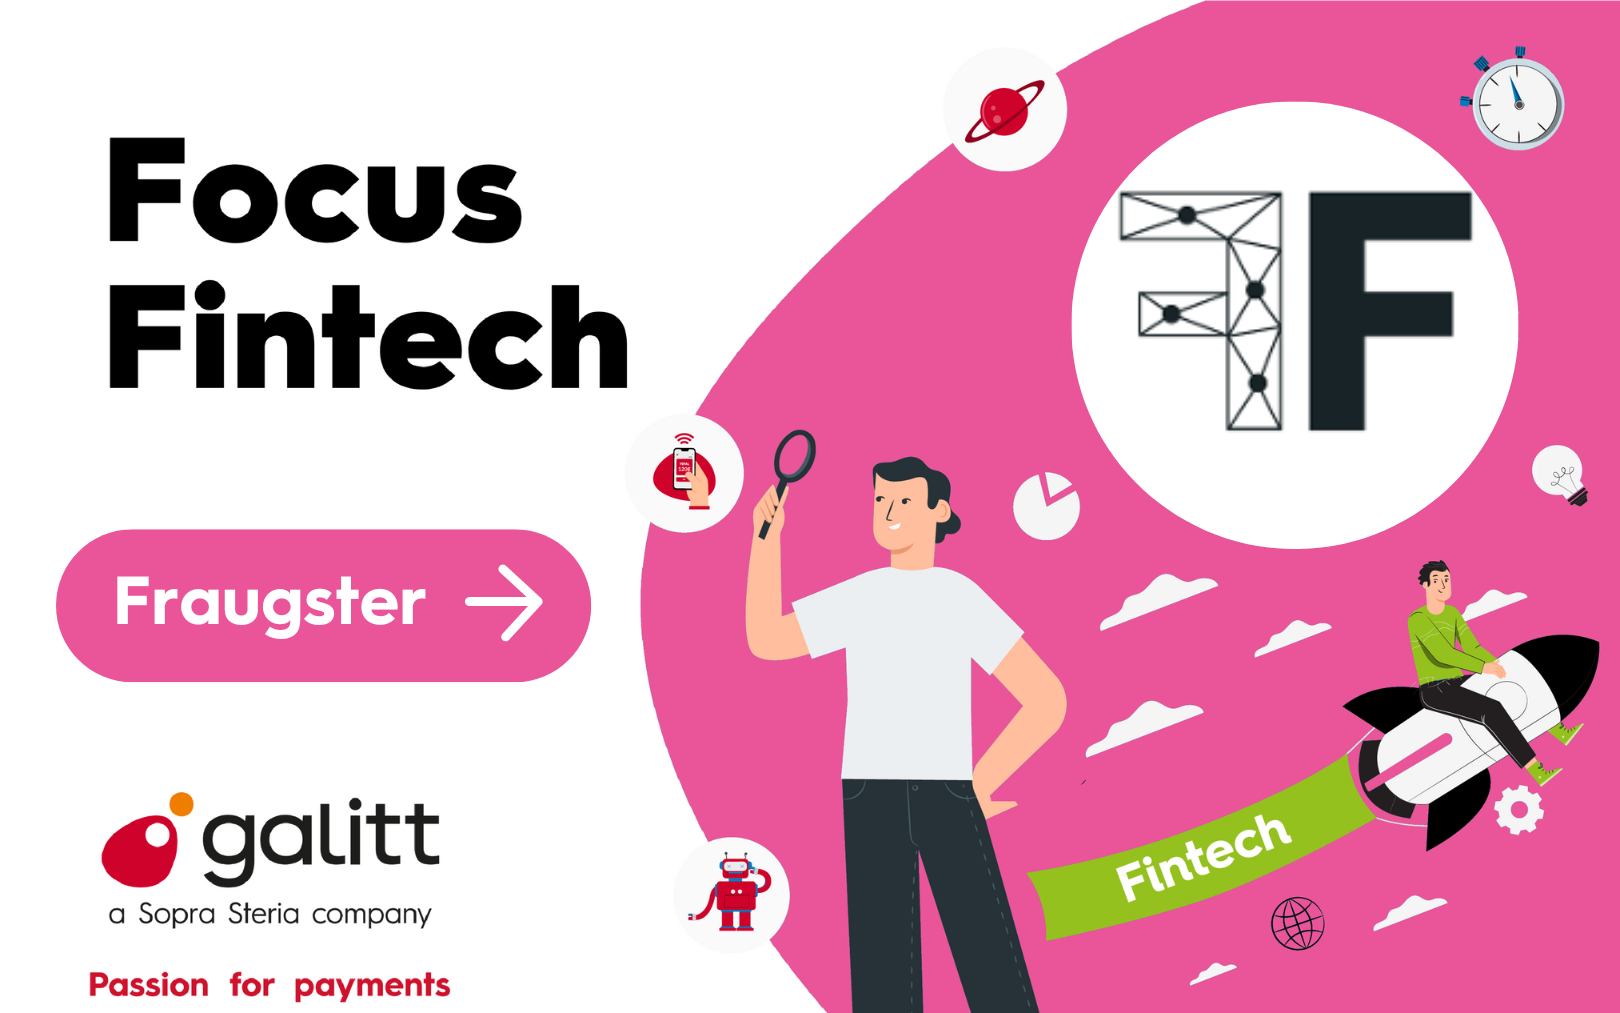 Focus Fintech Fraugster